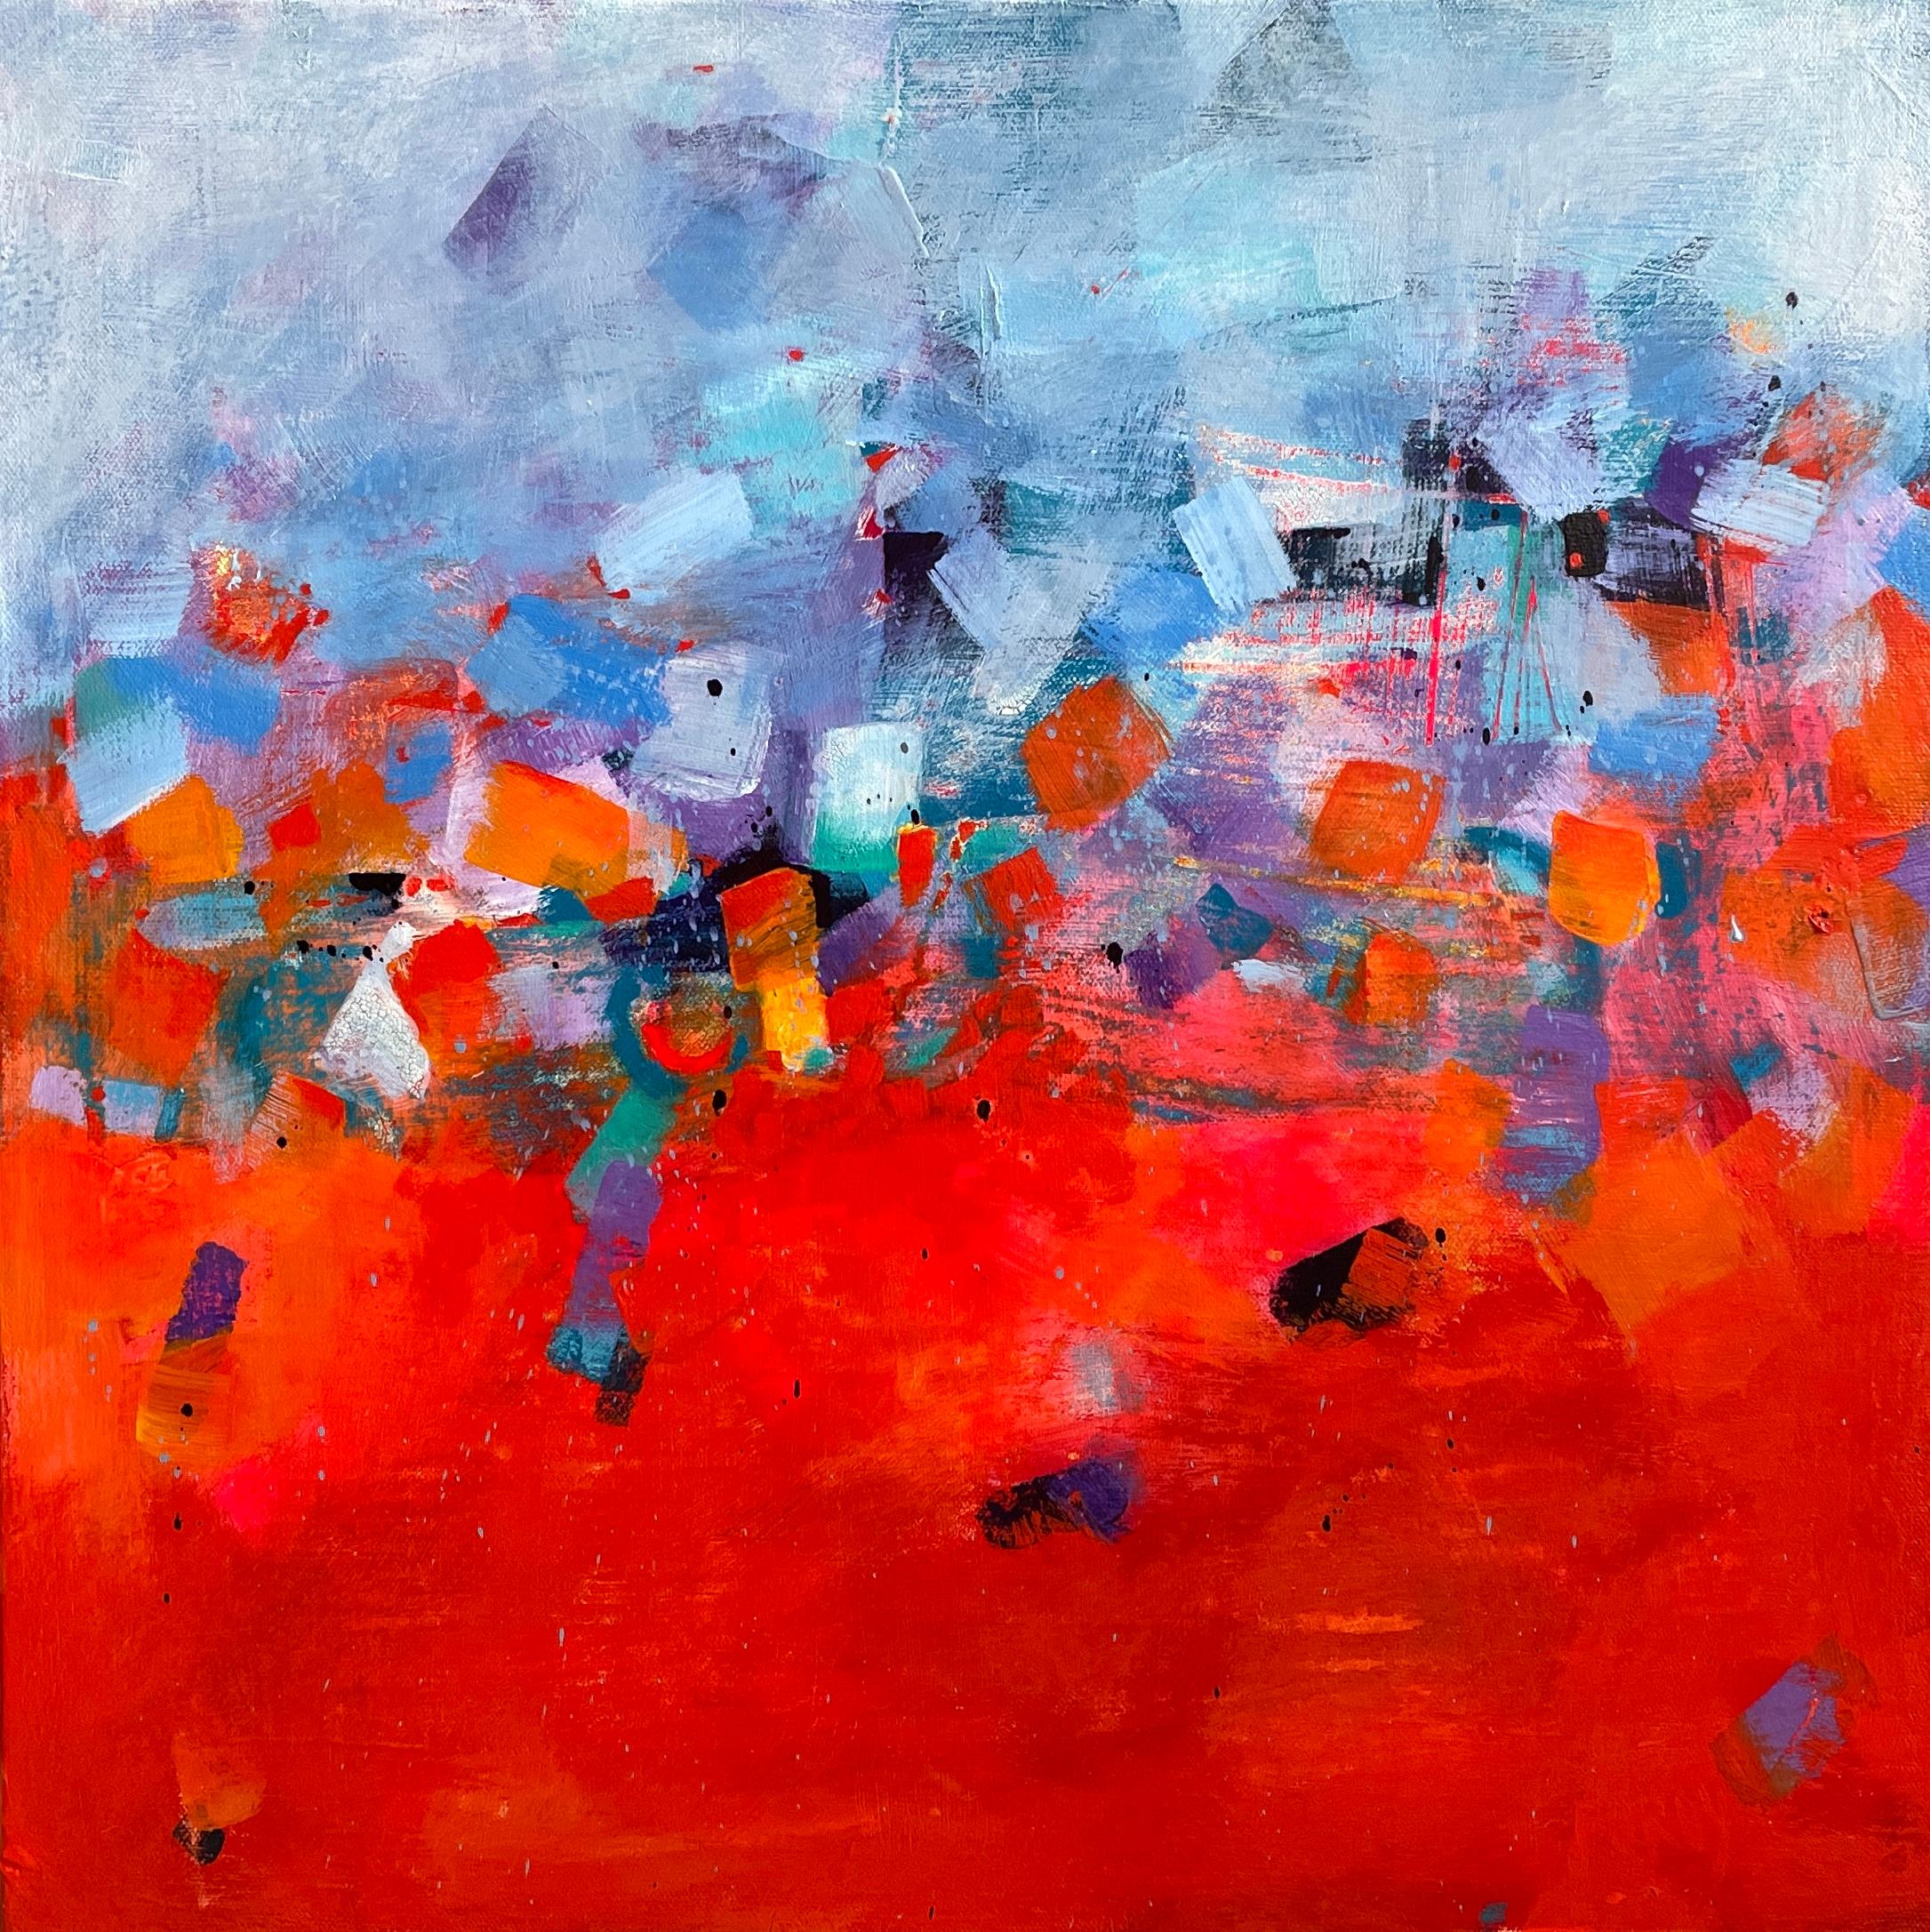 Maria Poroy Abstract Painting – Revelation" - Blau und Rot - Kleiner zeitgenössischer abstrakter Expressionismus